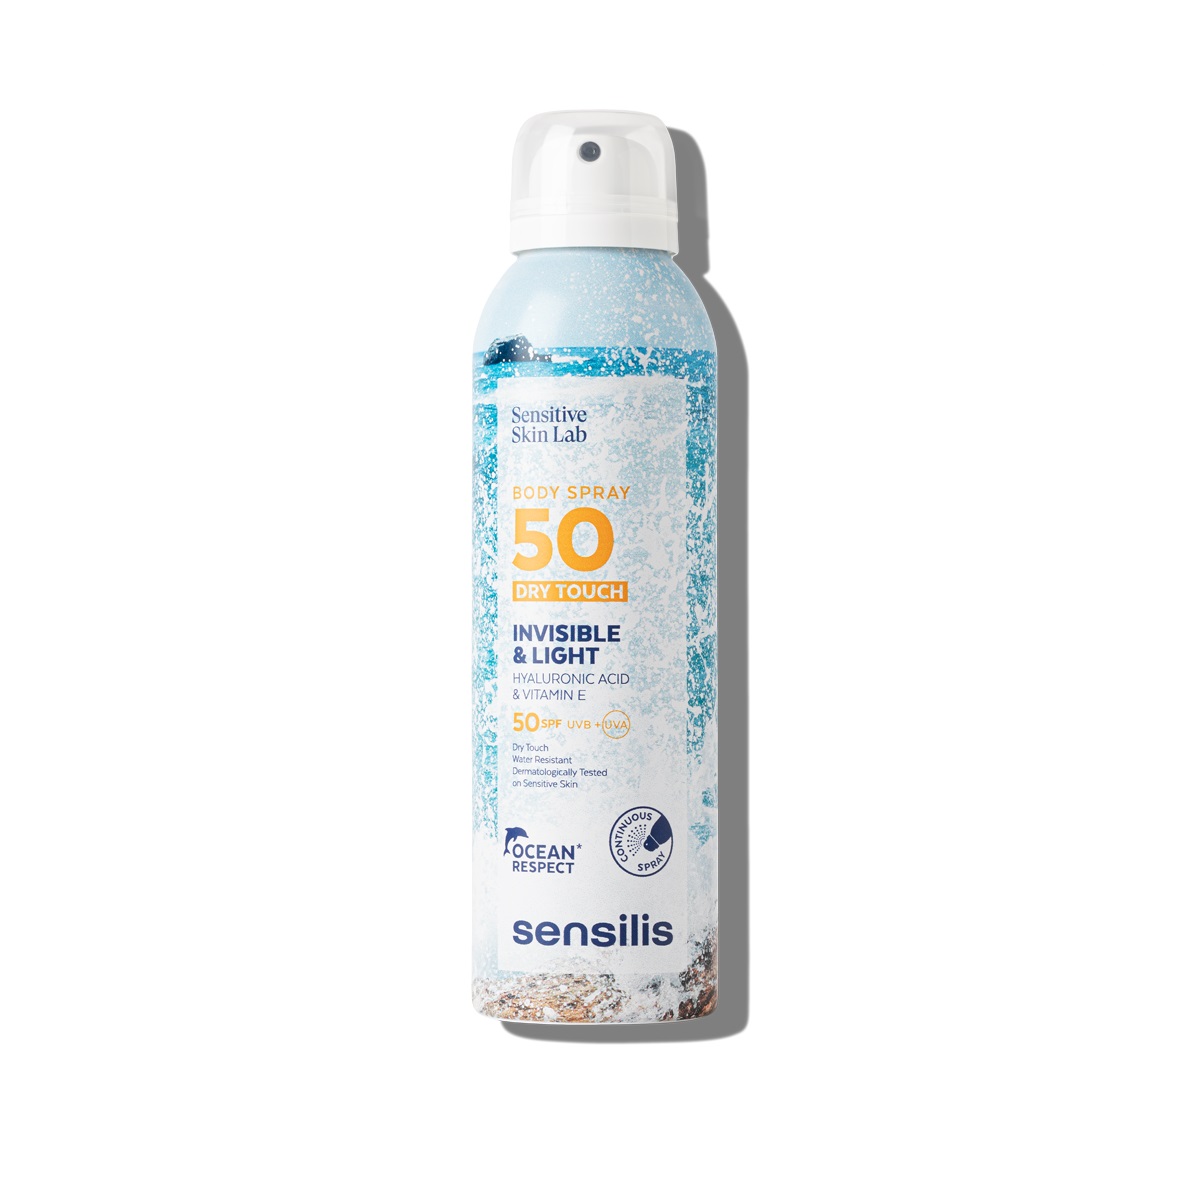 sensilis-body-spray-spf50-toucher-sec-200ml